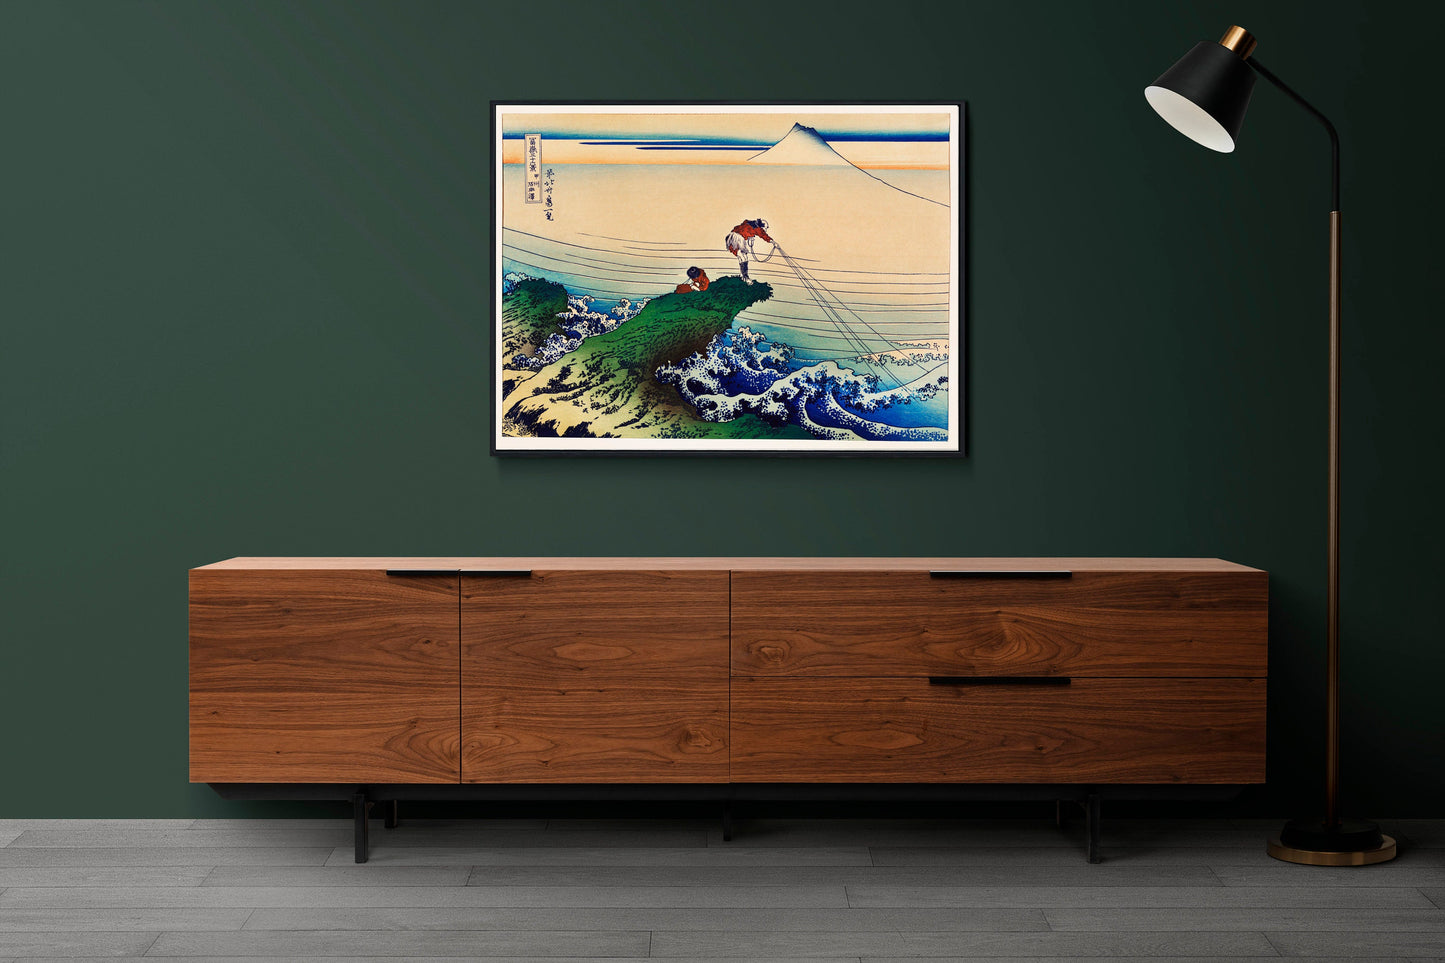 Koshu Kajikazawa by Katsushika Hokusai Japanese Art Print Poster Wall Hanging Decor A4 A3 A2